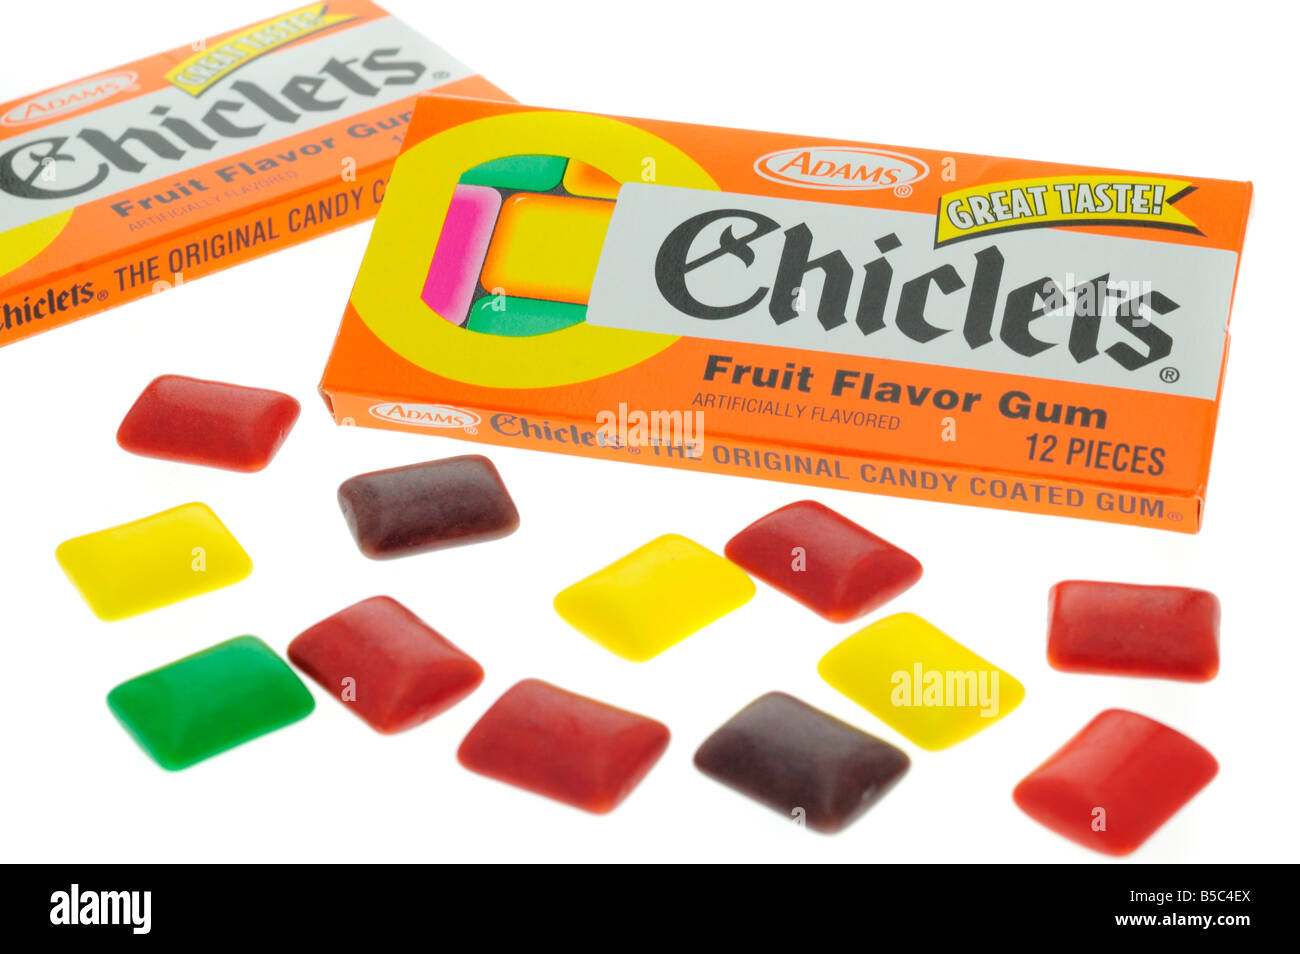 adams-chicklets-fruit-flavoured-chewing-gum-B5C4EX.jpg